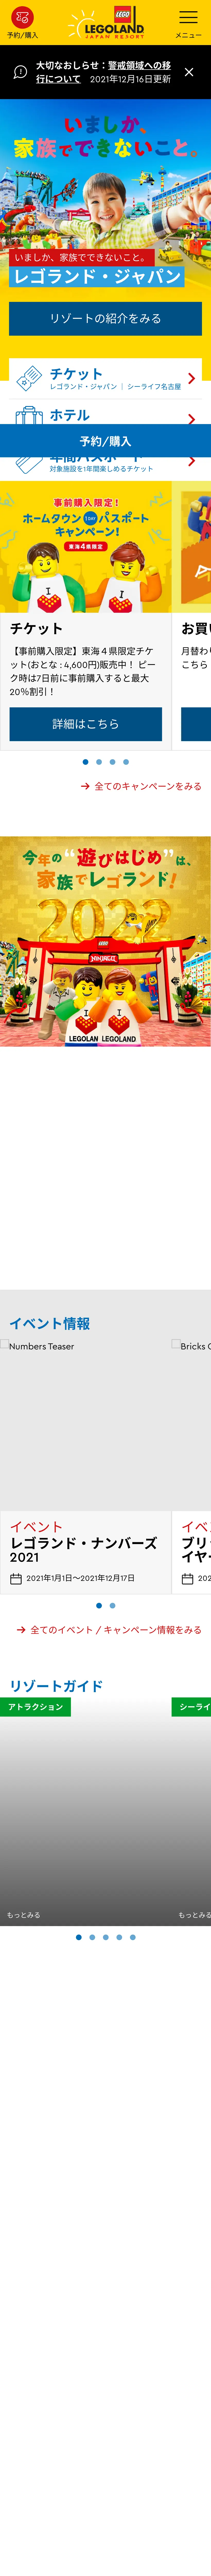 キャプチャ画面 会社名:LEGOLAND Japan合同会社プロジェクト名:LEGOLAND® 画面名:A デバイス名:SPカテゴリ:アミューズメントタグ:SP